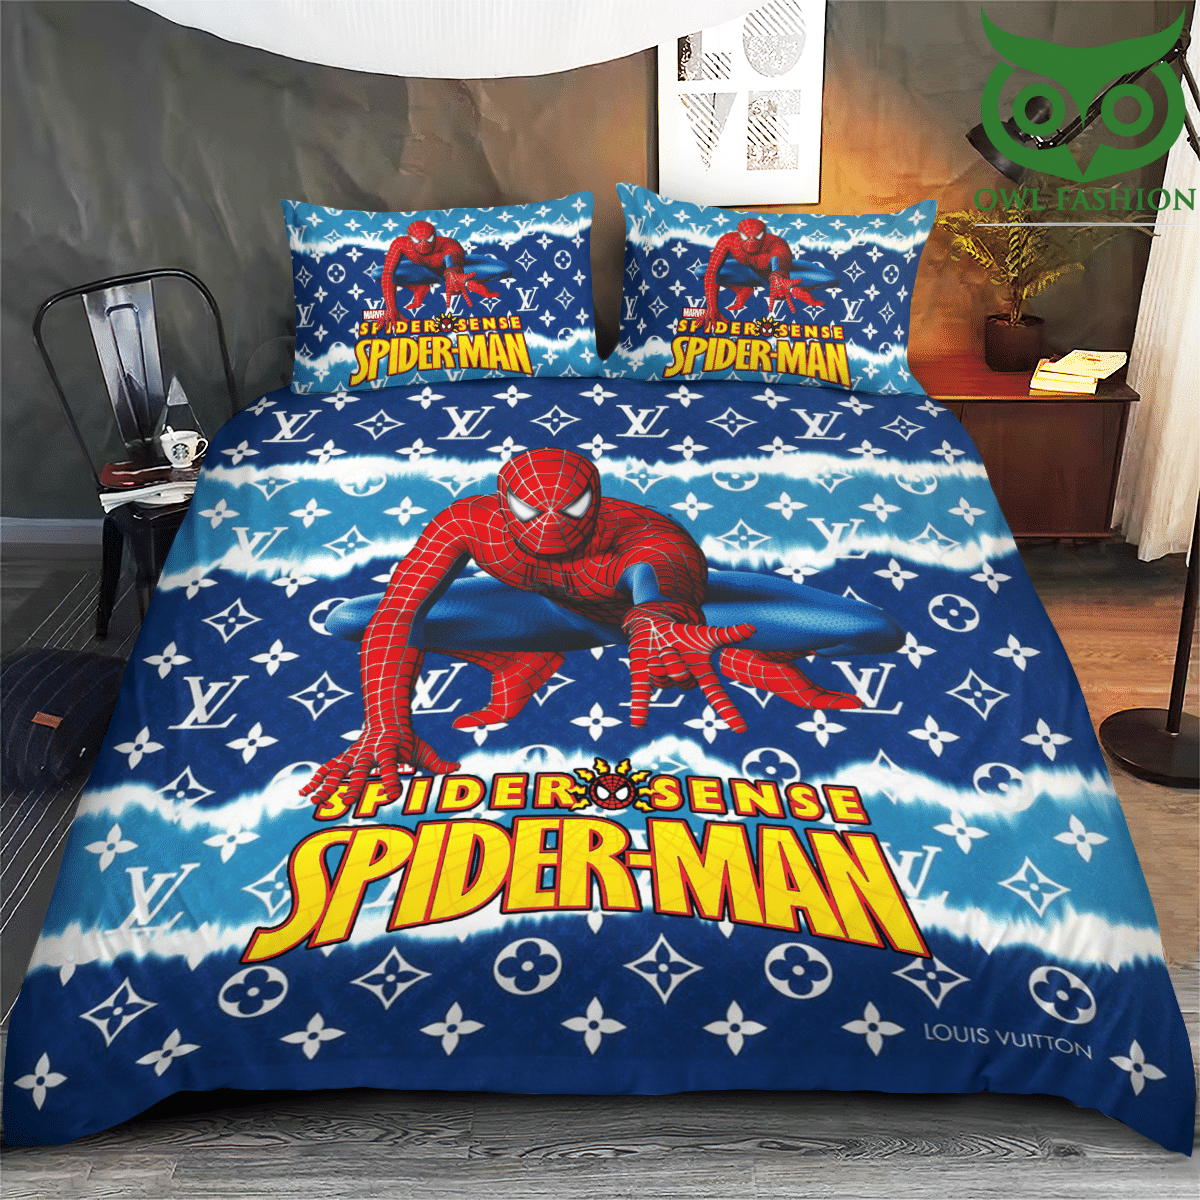 Louis Vuitton Spider sense Spiderman bedding set